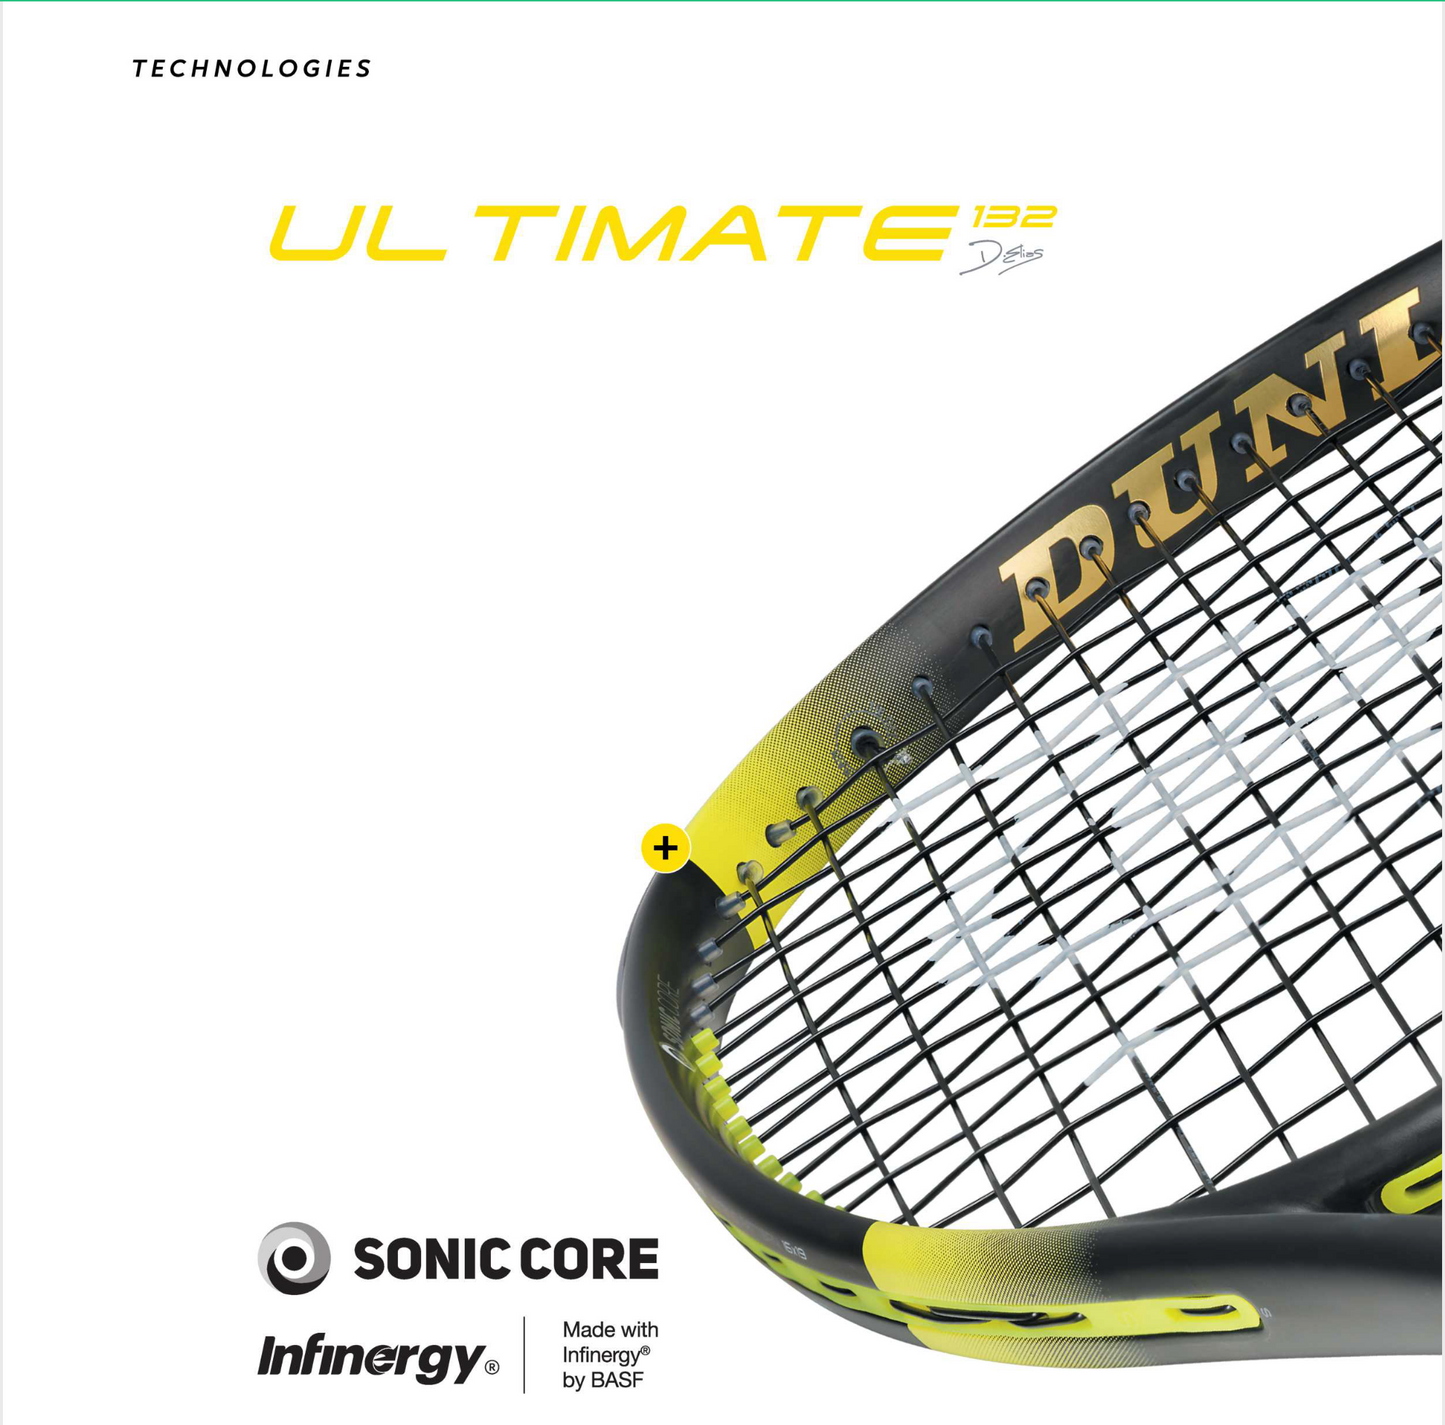 Soniccore Ultimate 132